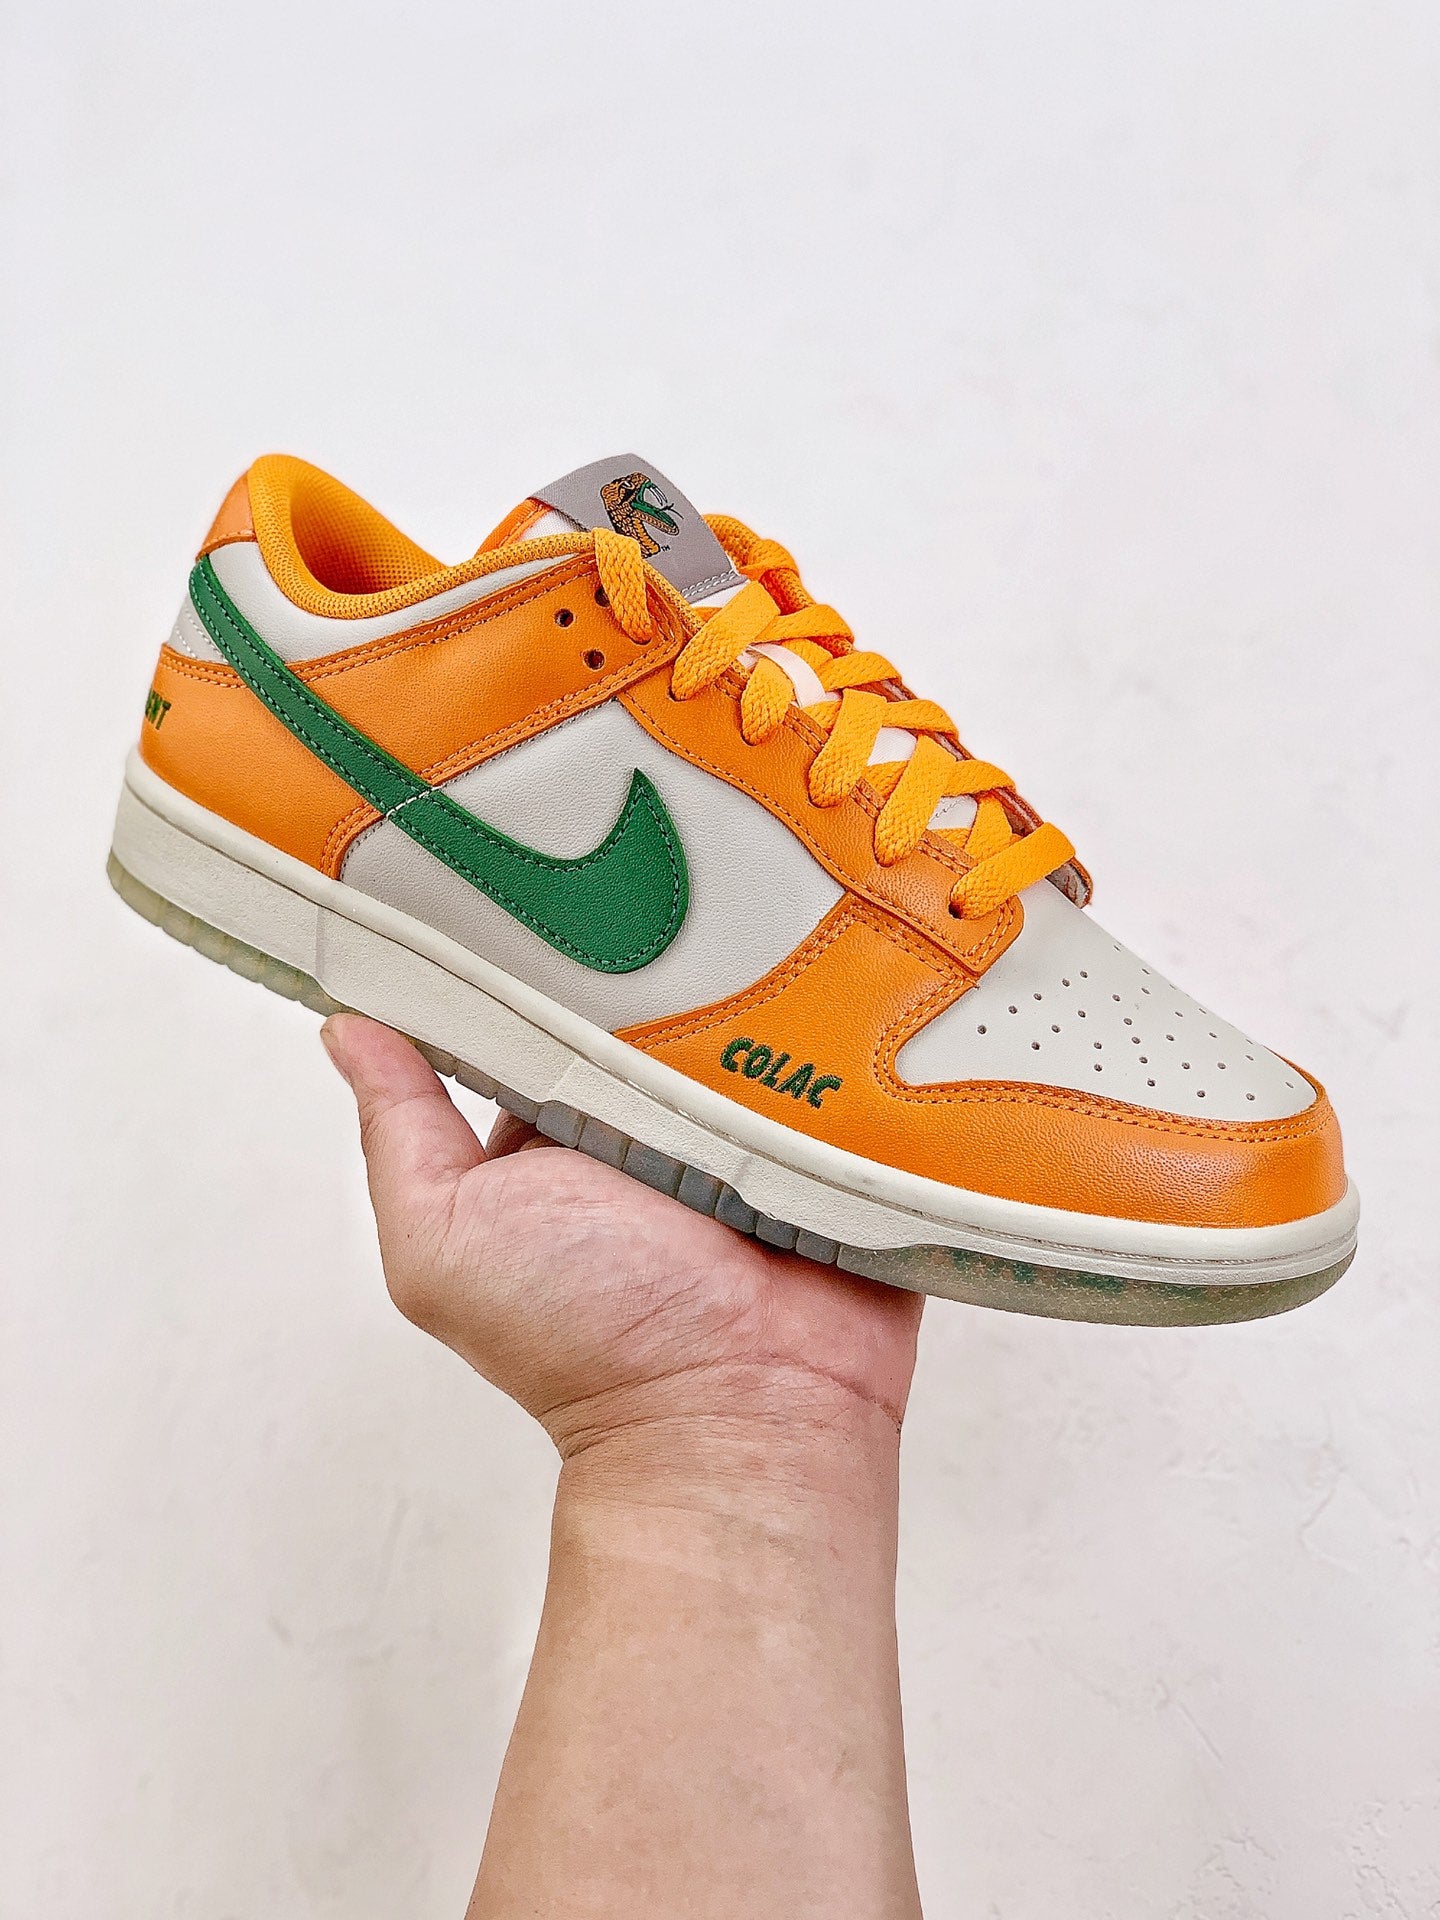 Nike SB Dunk Low "Orange green "